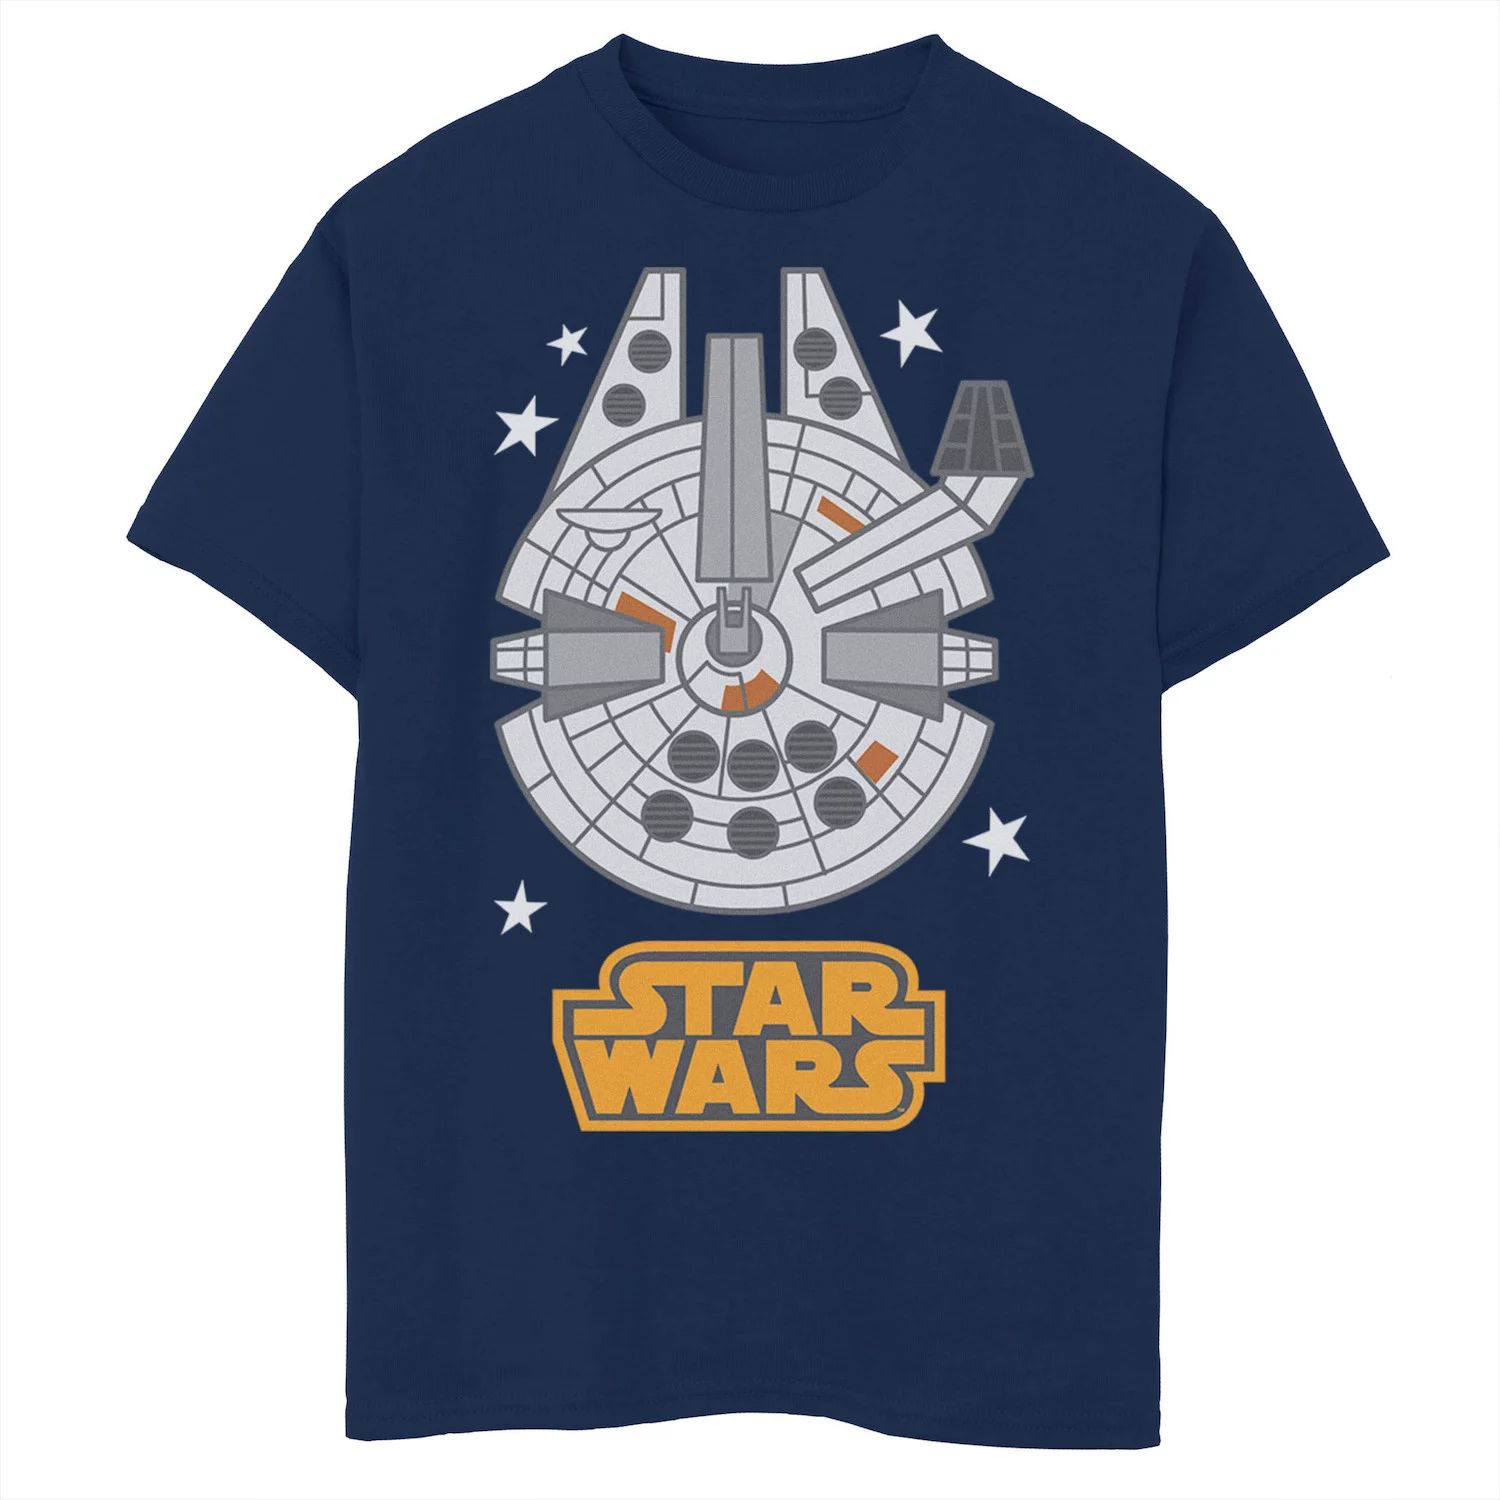 Футболка с рисунком Звездных войн «Сокол тысячелетия» для мальчиков 8–20 лет Star Wars футболка с рисунком сокол тысячелетия для мальчиков 8–20 лет star wars